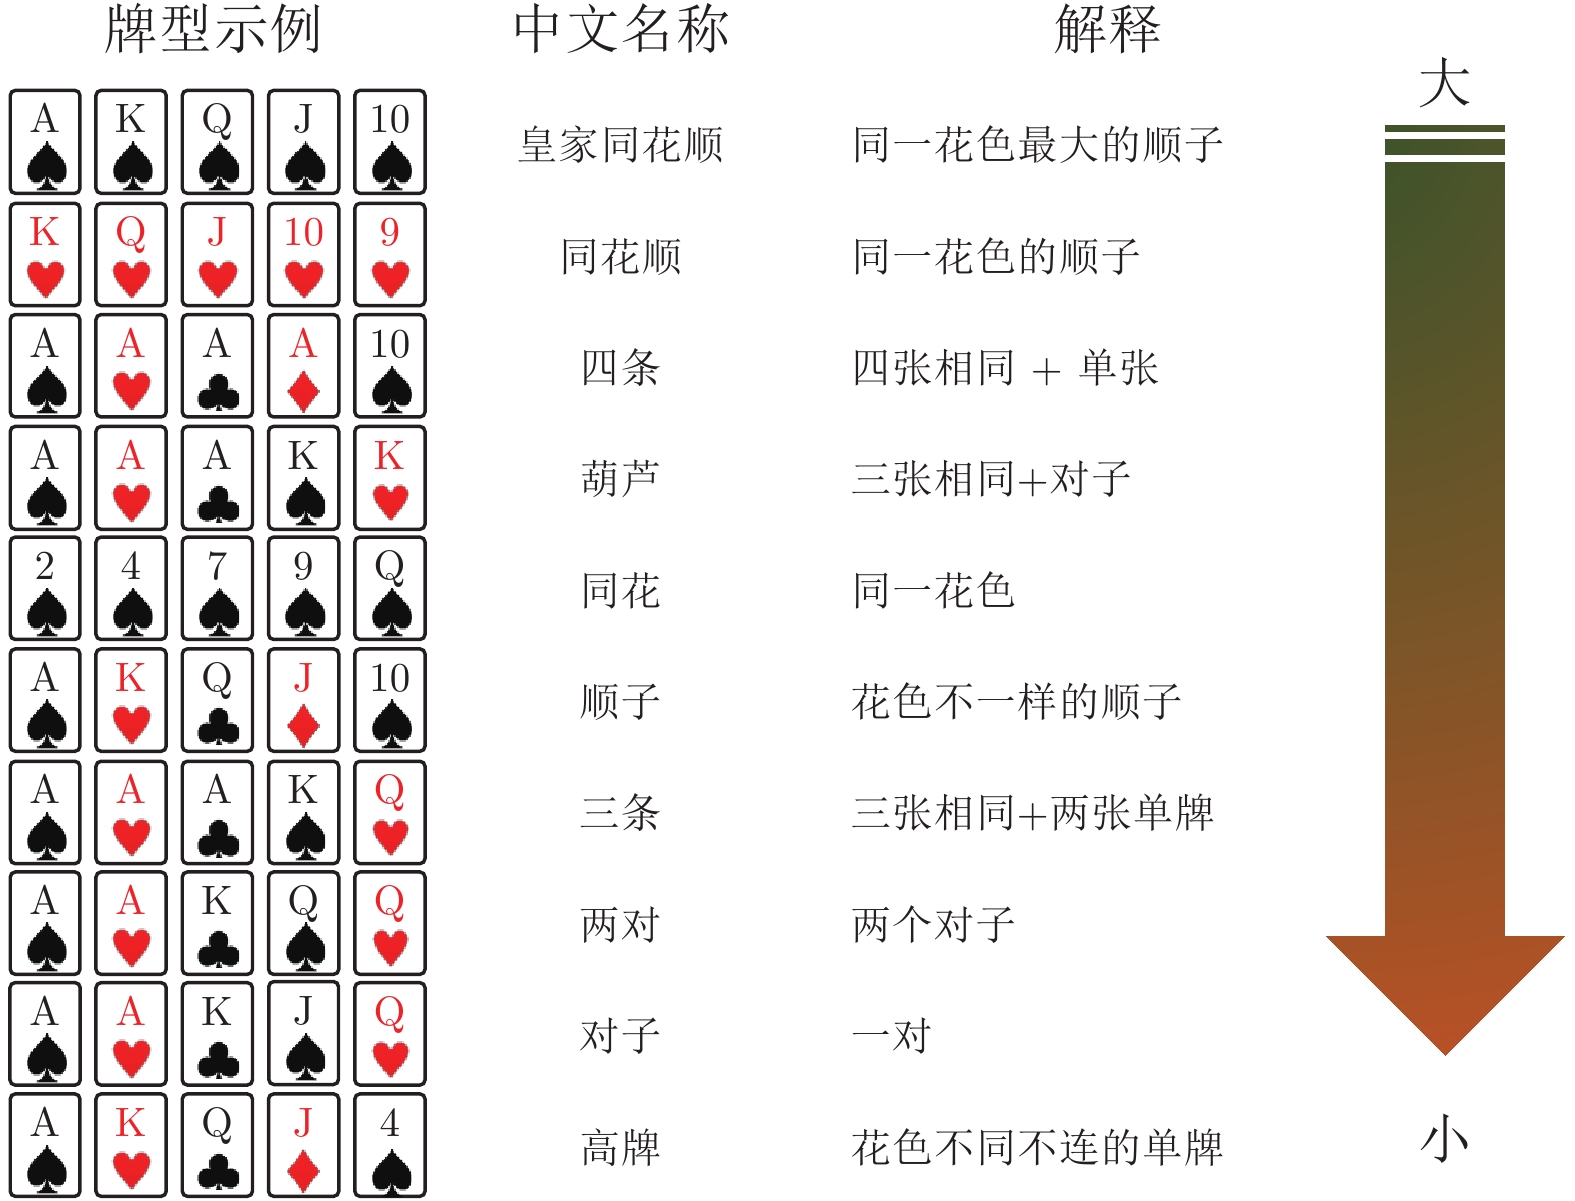 图 1  德州扑克游戏牌型大小规则图 3  对手池策略空间与博弈风格类型